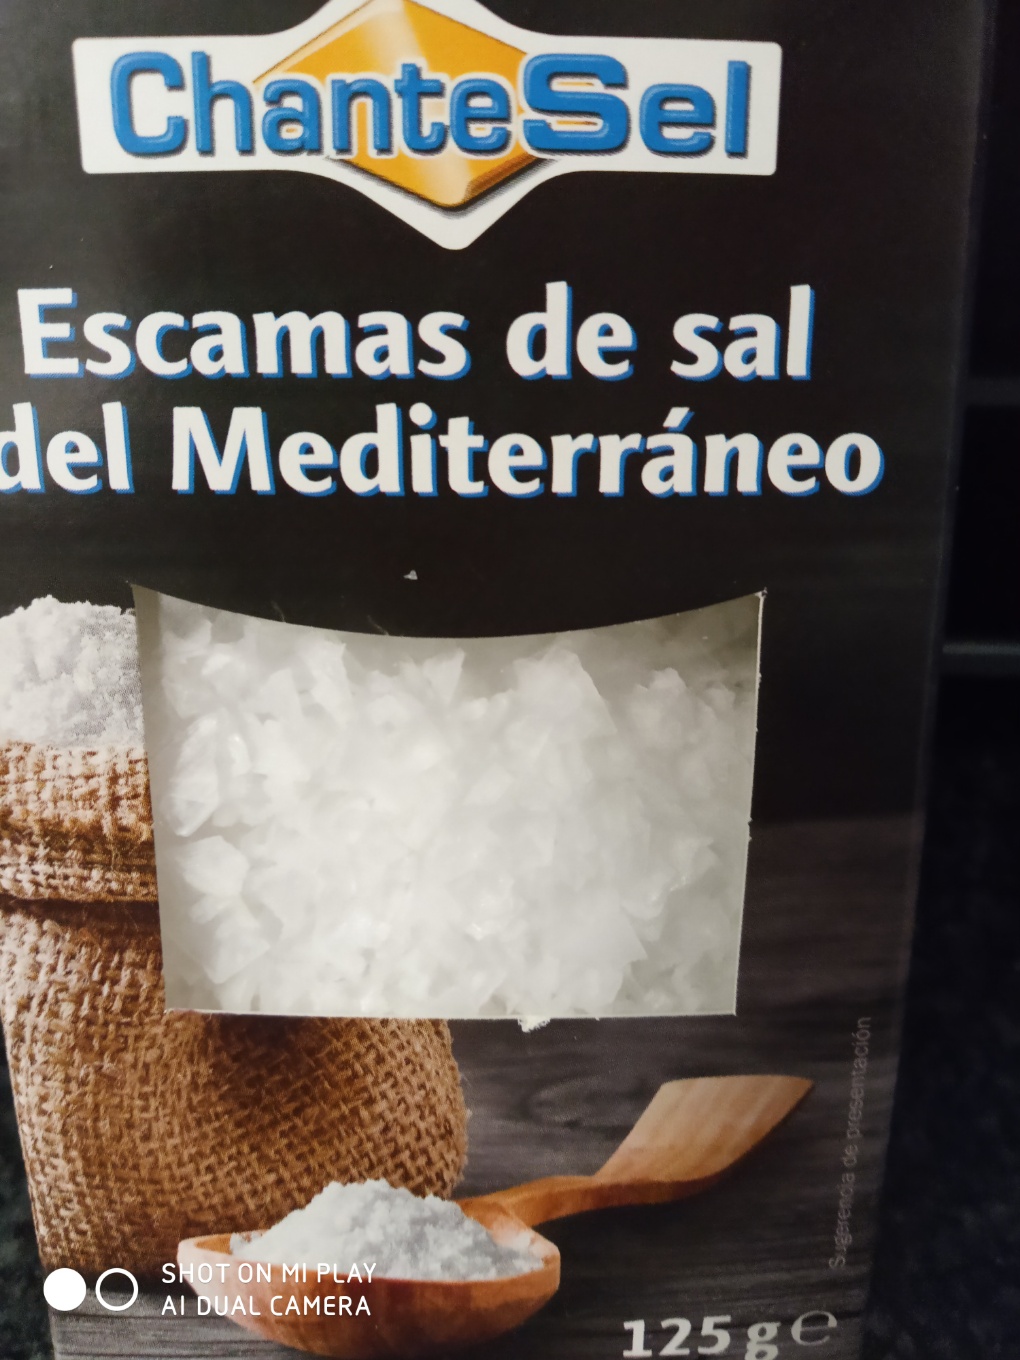 Escamas de sal del mediterráneo.